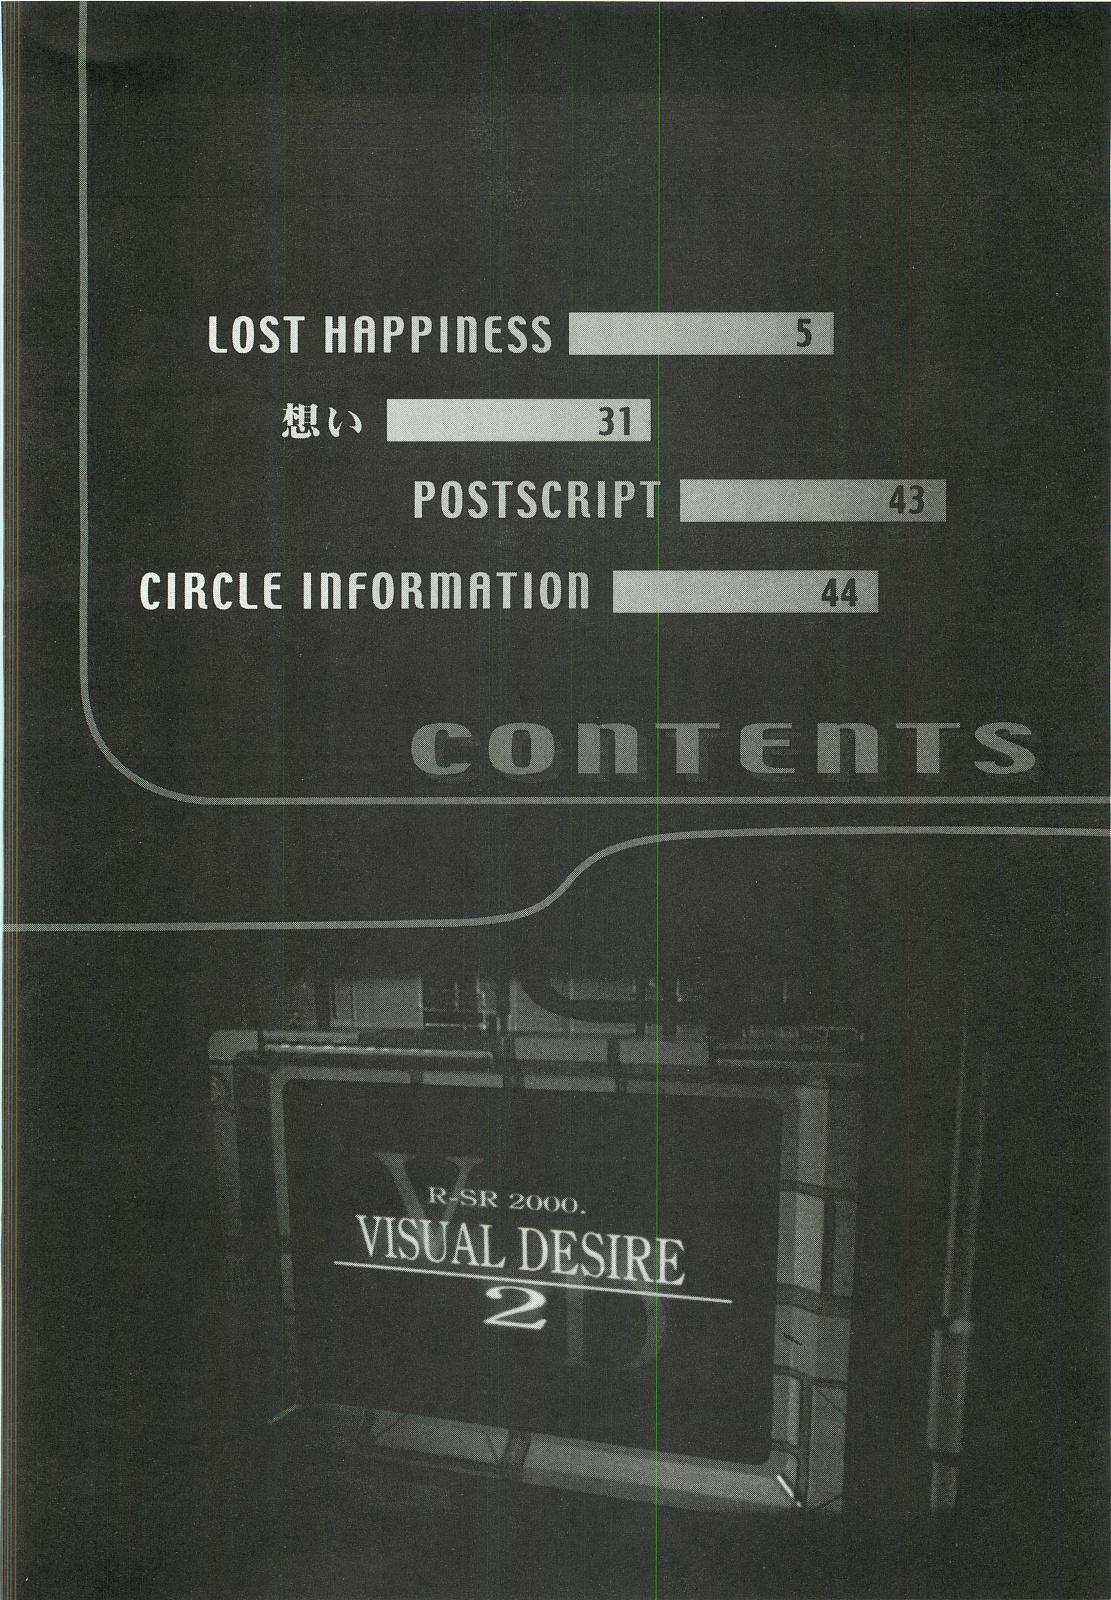 Vergon VISUAL DESIRE 2 - With you Sentando - Page 3